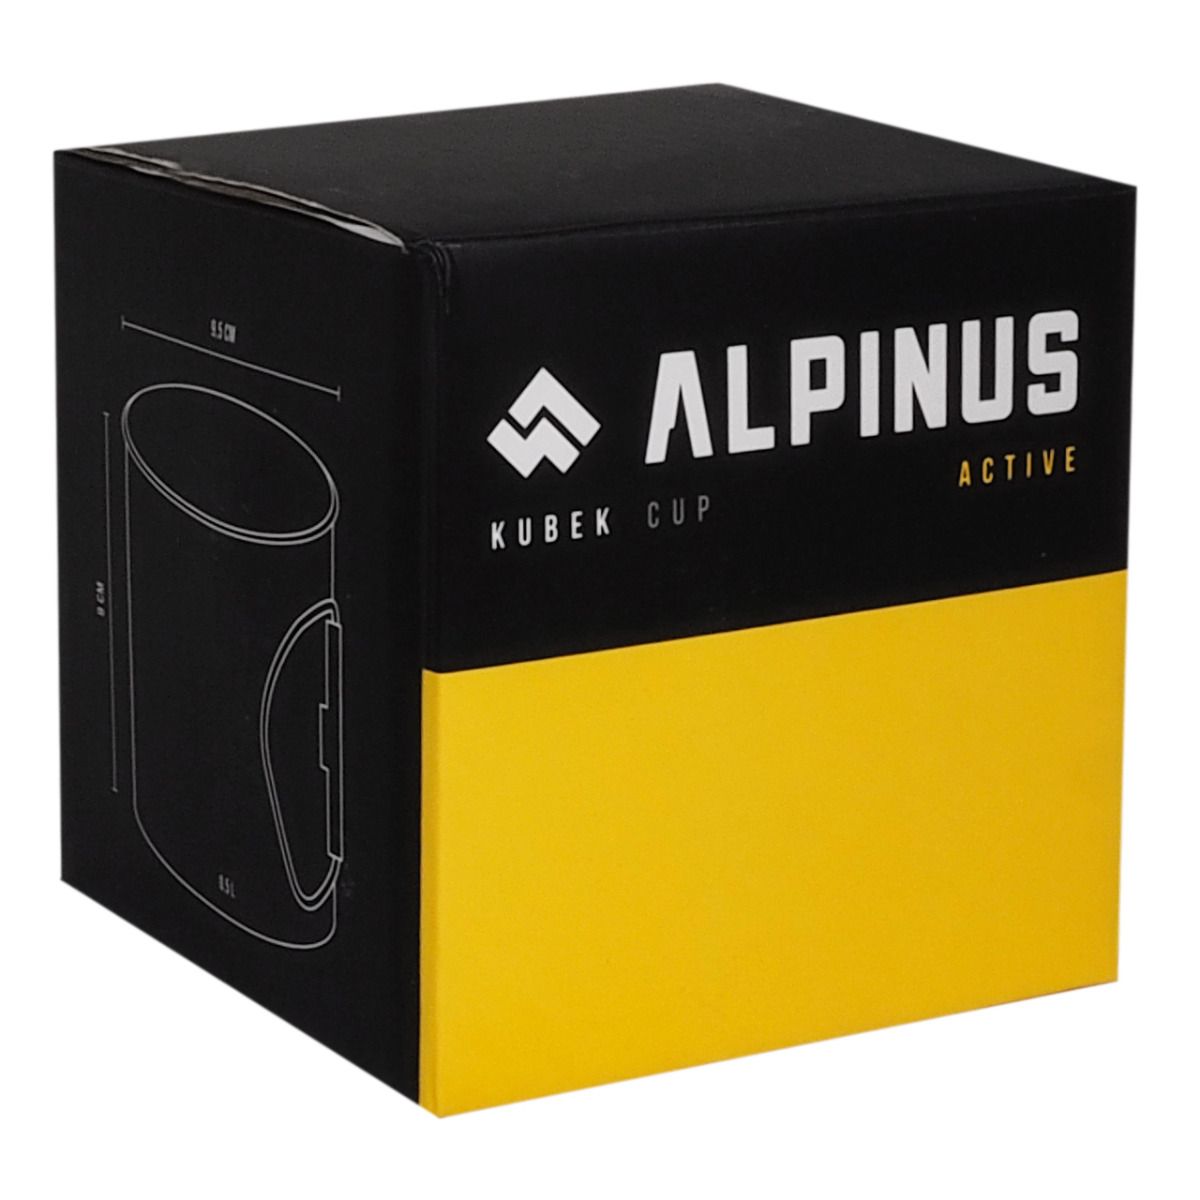 Alpinus Kubek Lugo 0,5L DE11145